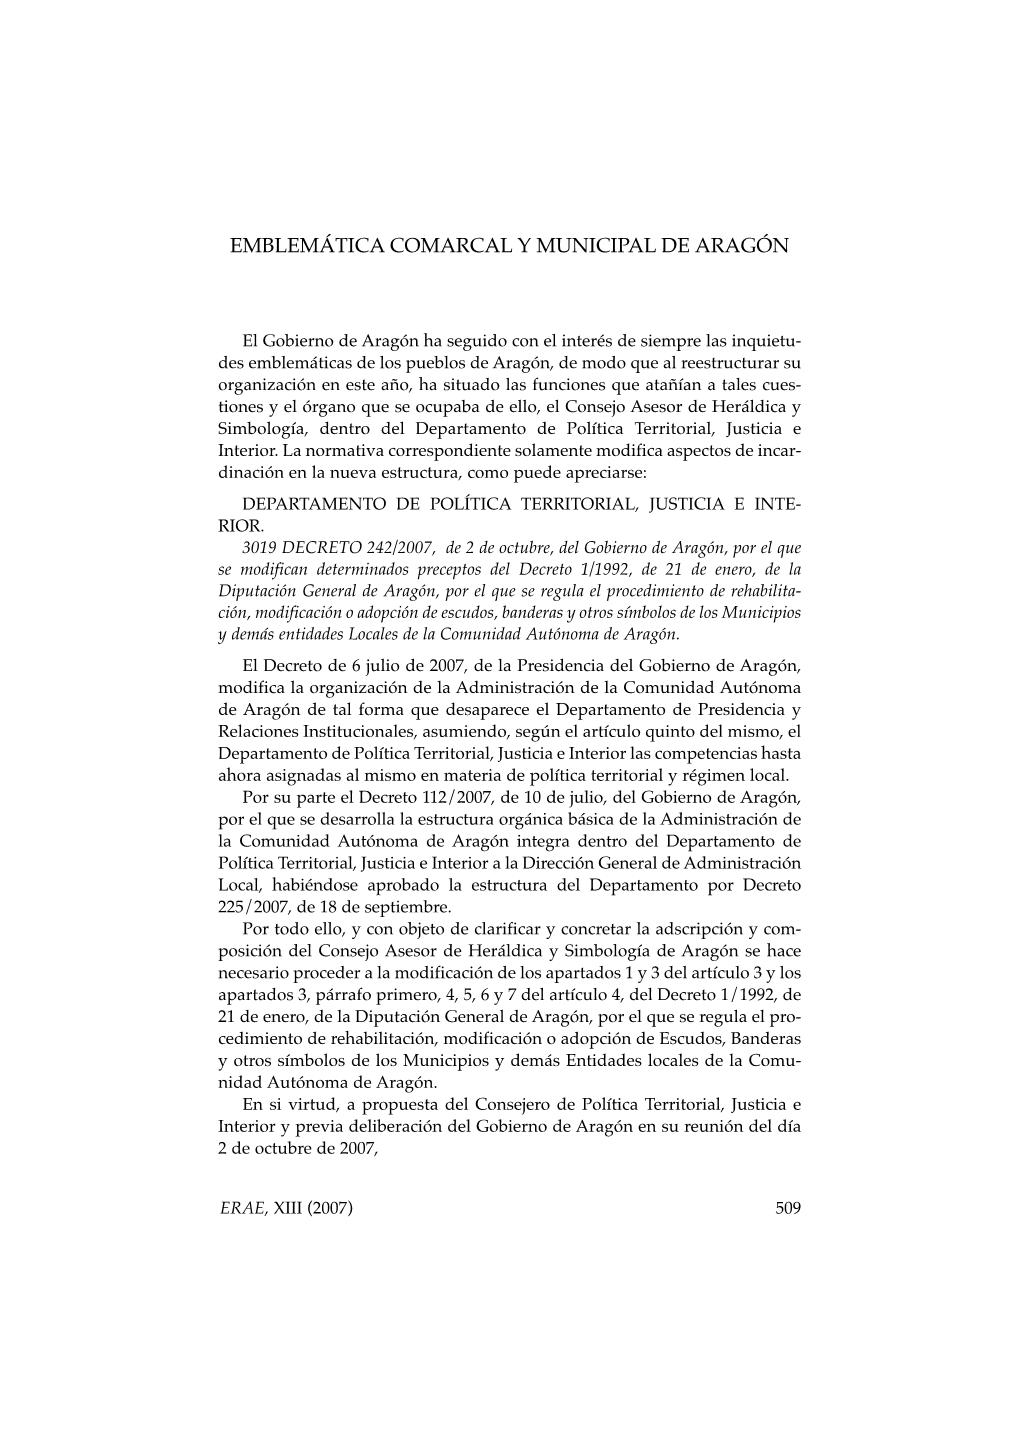 23. Emblemática Comarcal Y Municipal De Aragón